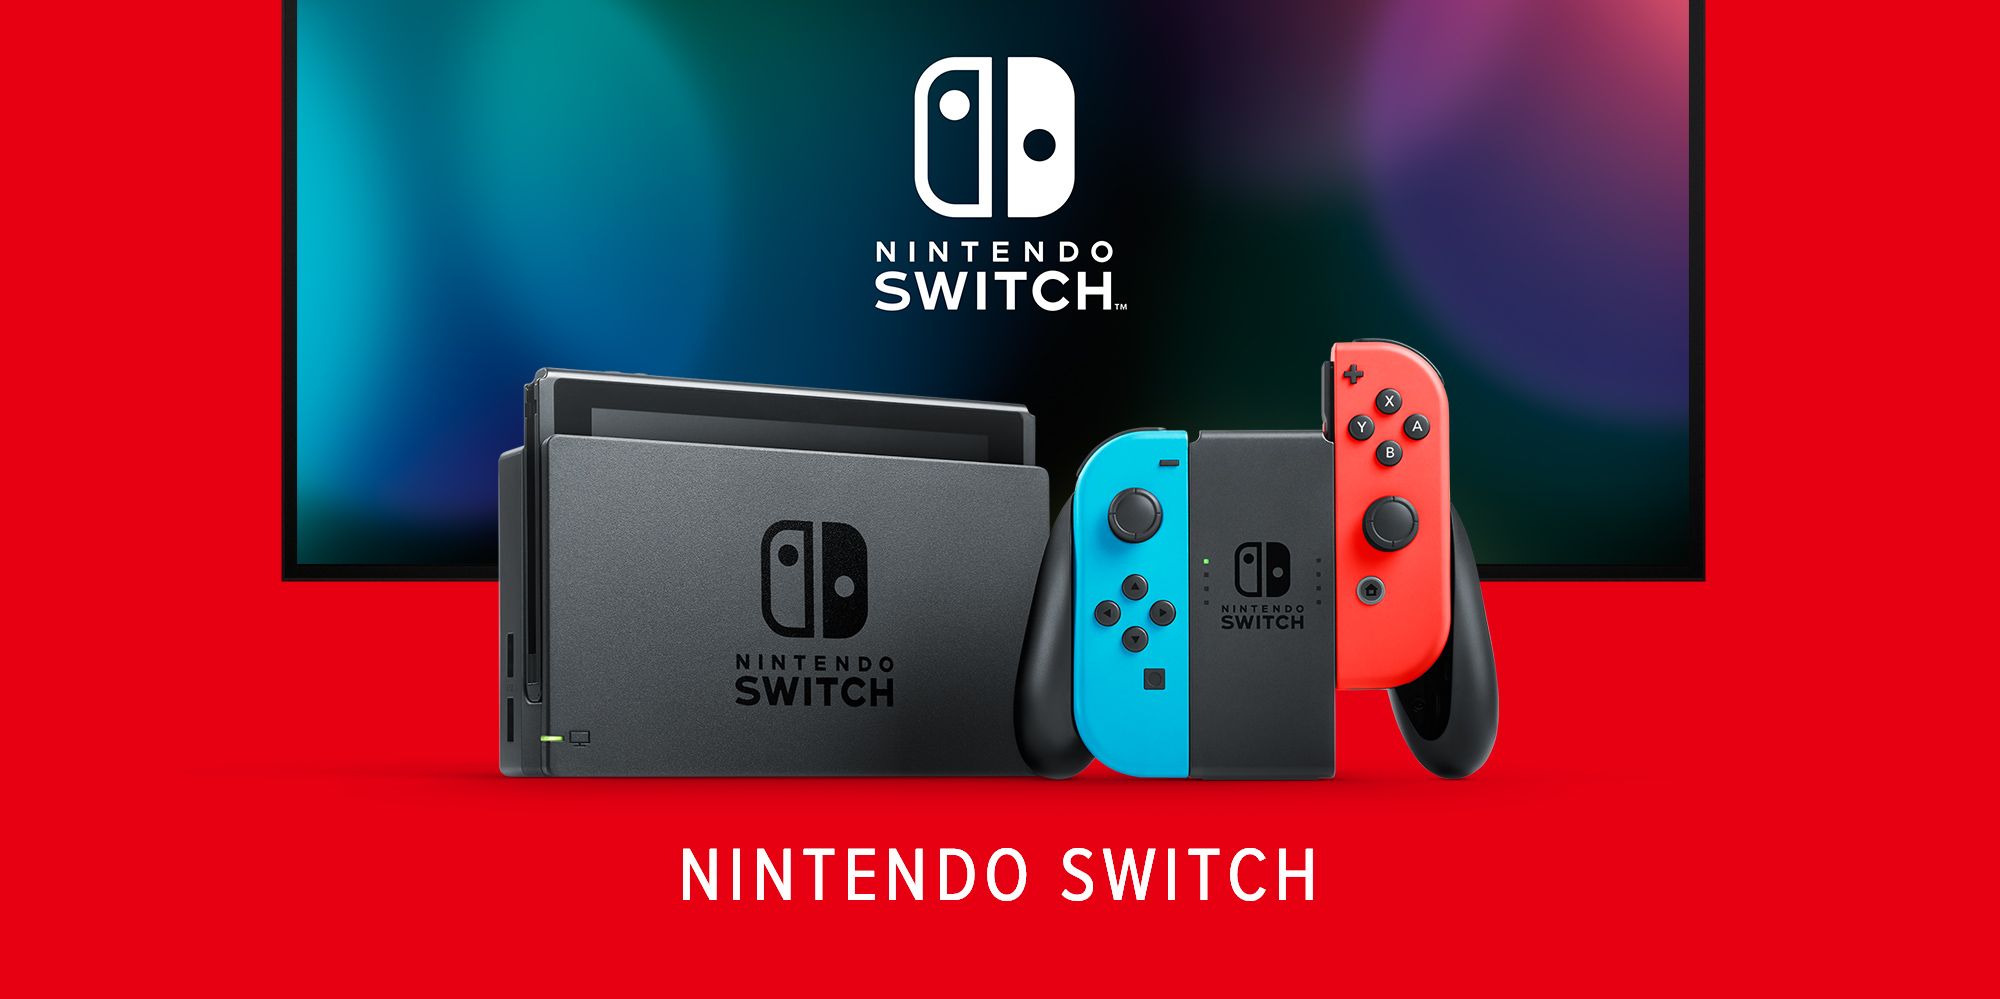 Portierungen für die Nintendo Switch